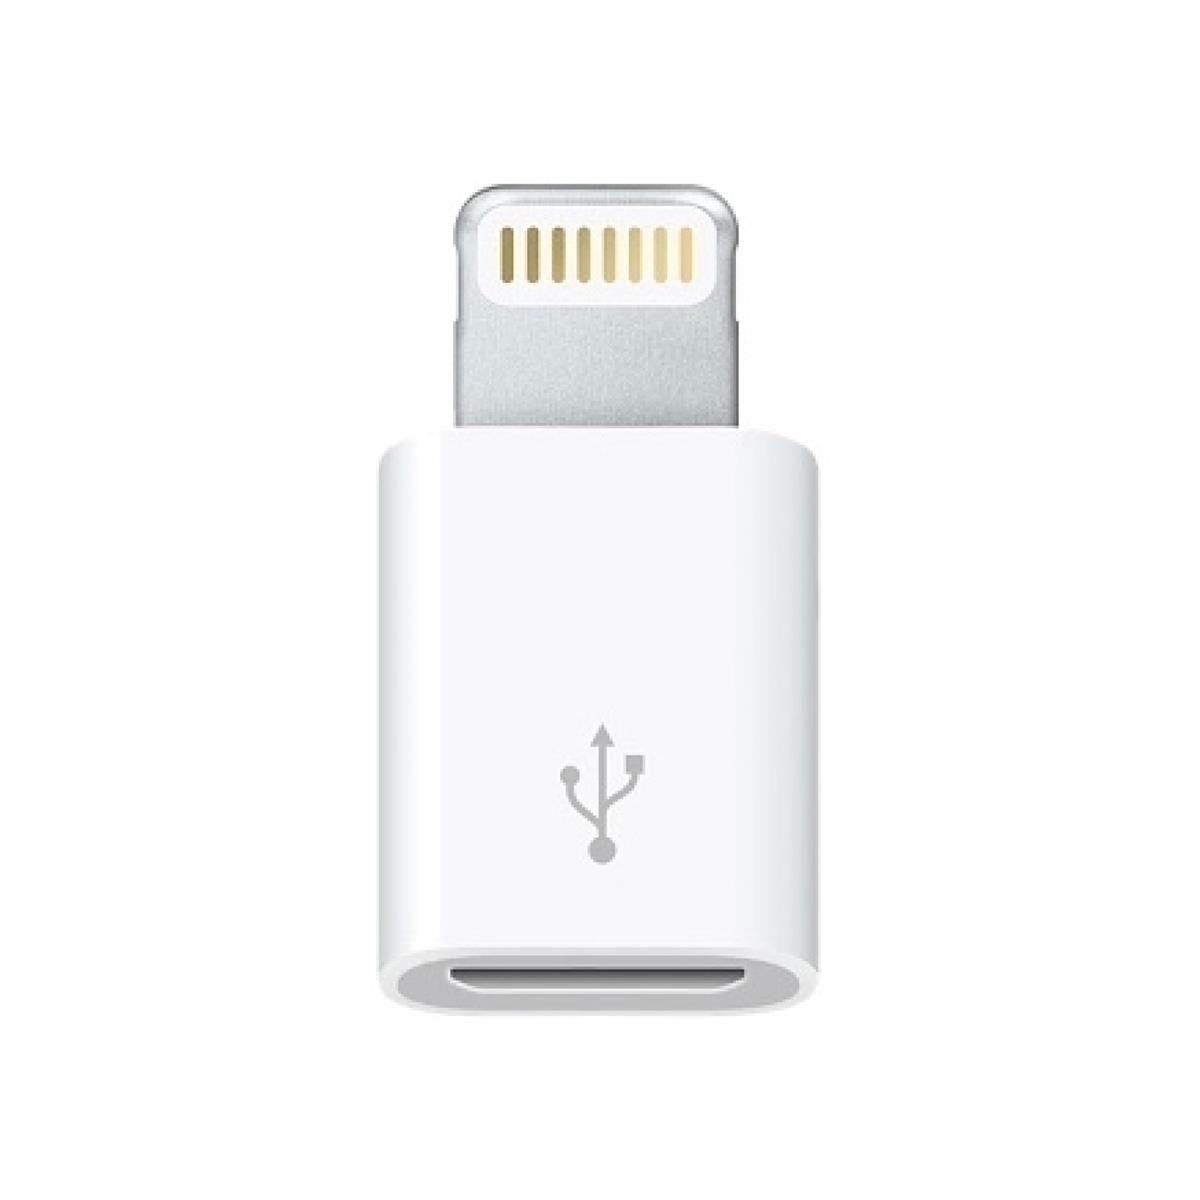 Apple İphone / İpad Micro Usb Dönüştürücü Adaptör Otg Aparat (4172)